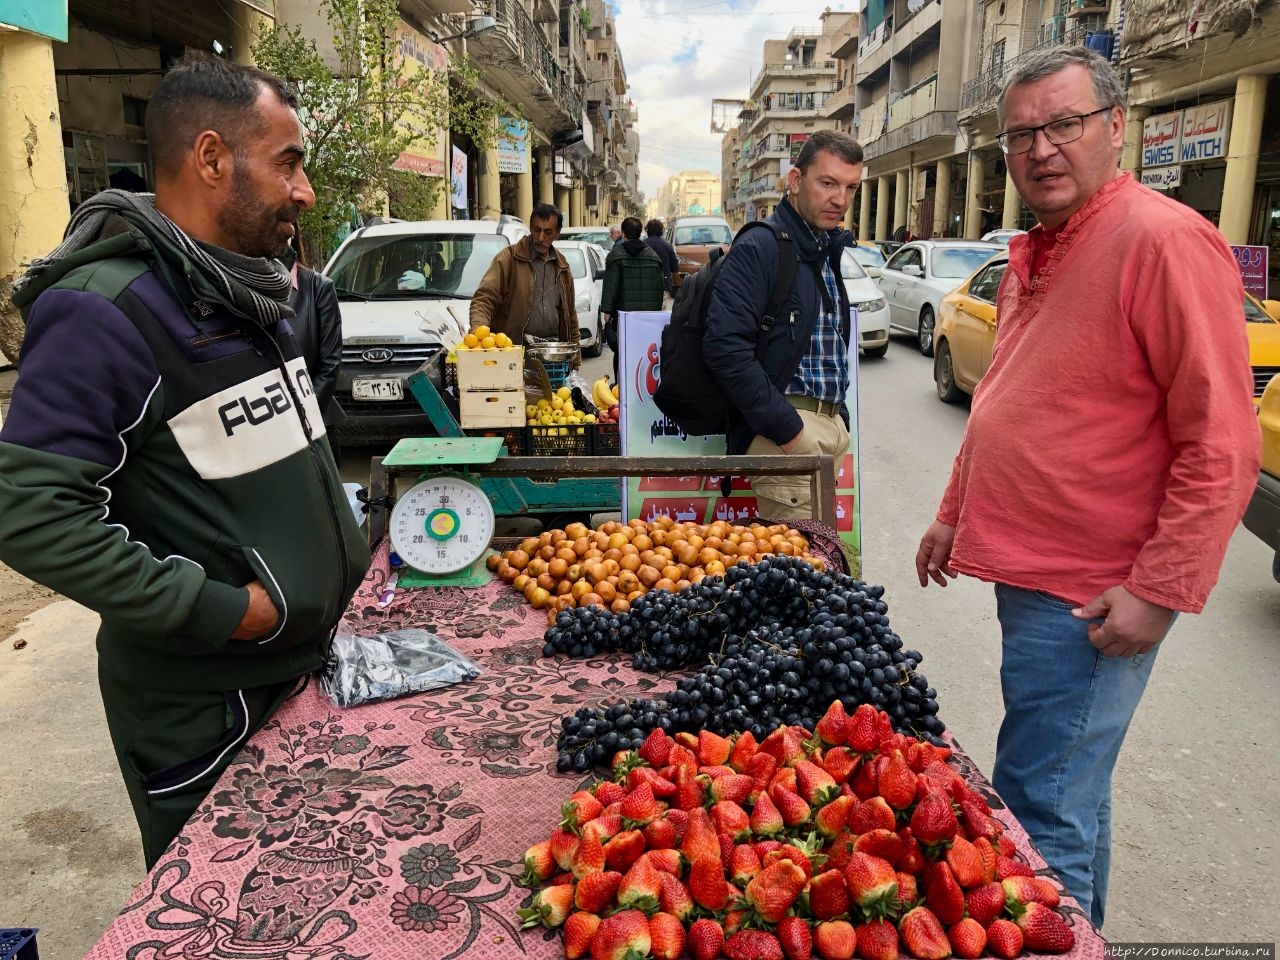 Рыночная улица Аль-Шухада / Al-Shuhada market street